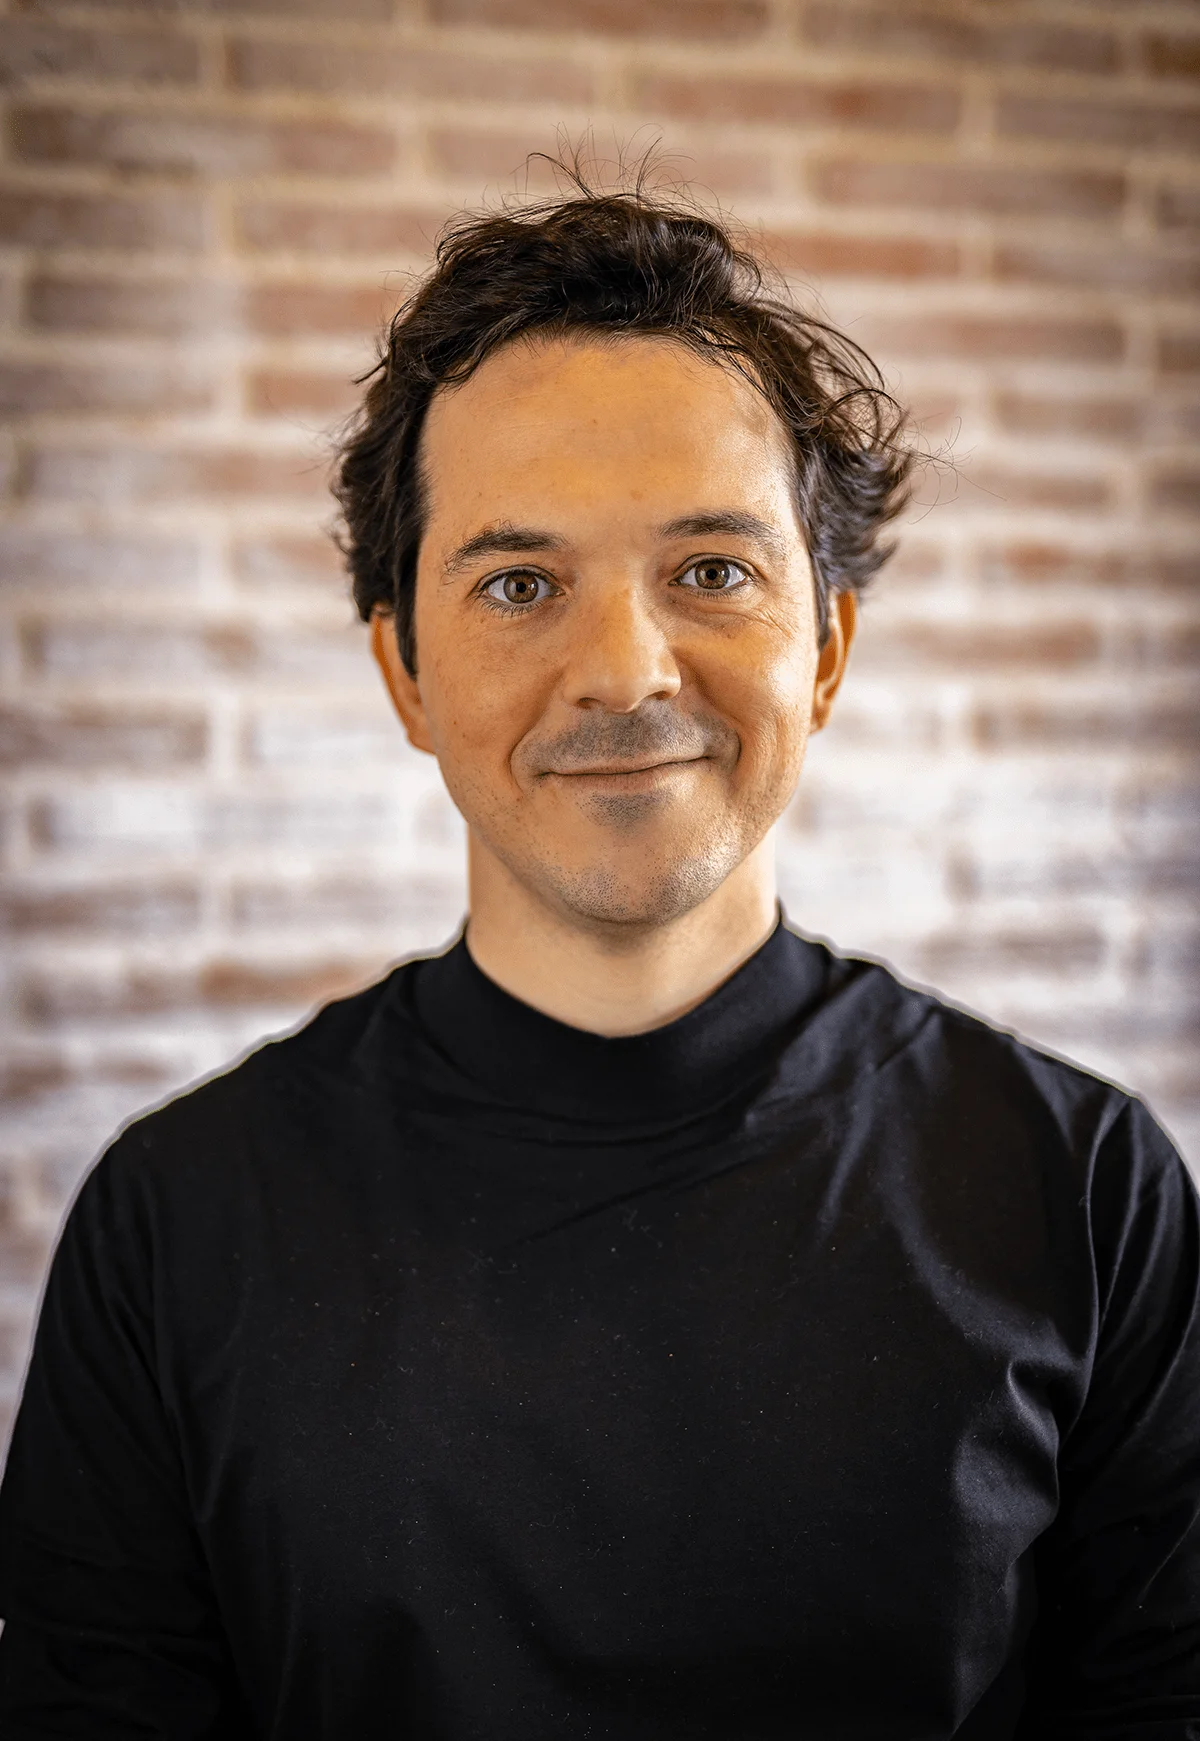 Vivla's Chief Executive Officer: Carlos Emilio Gómez